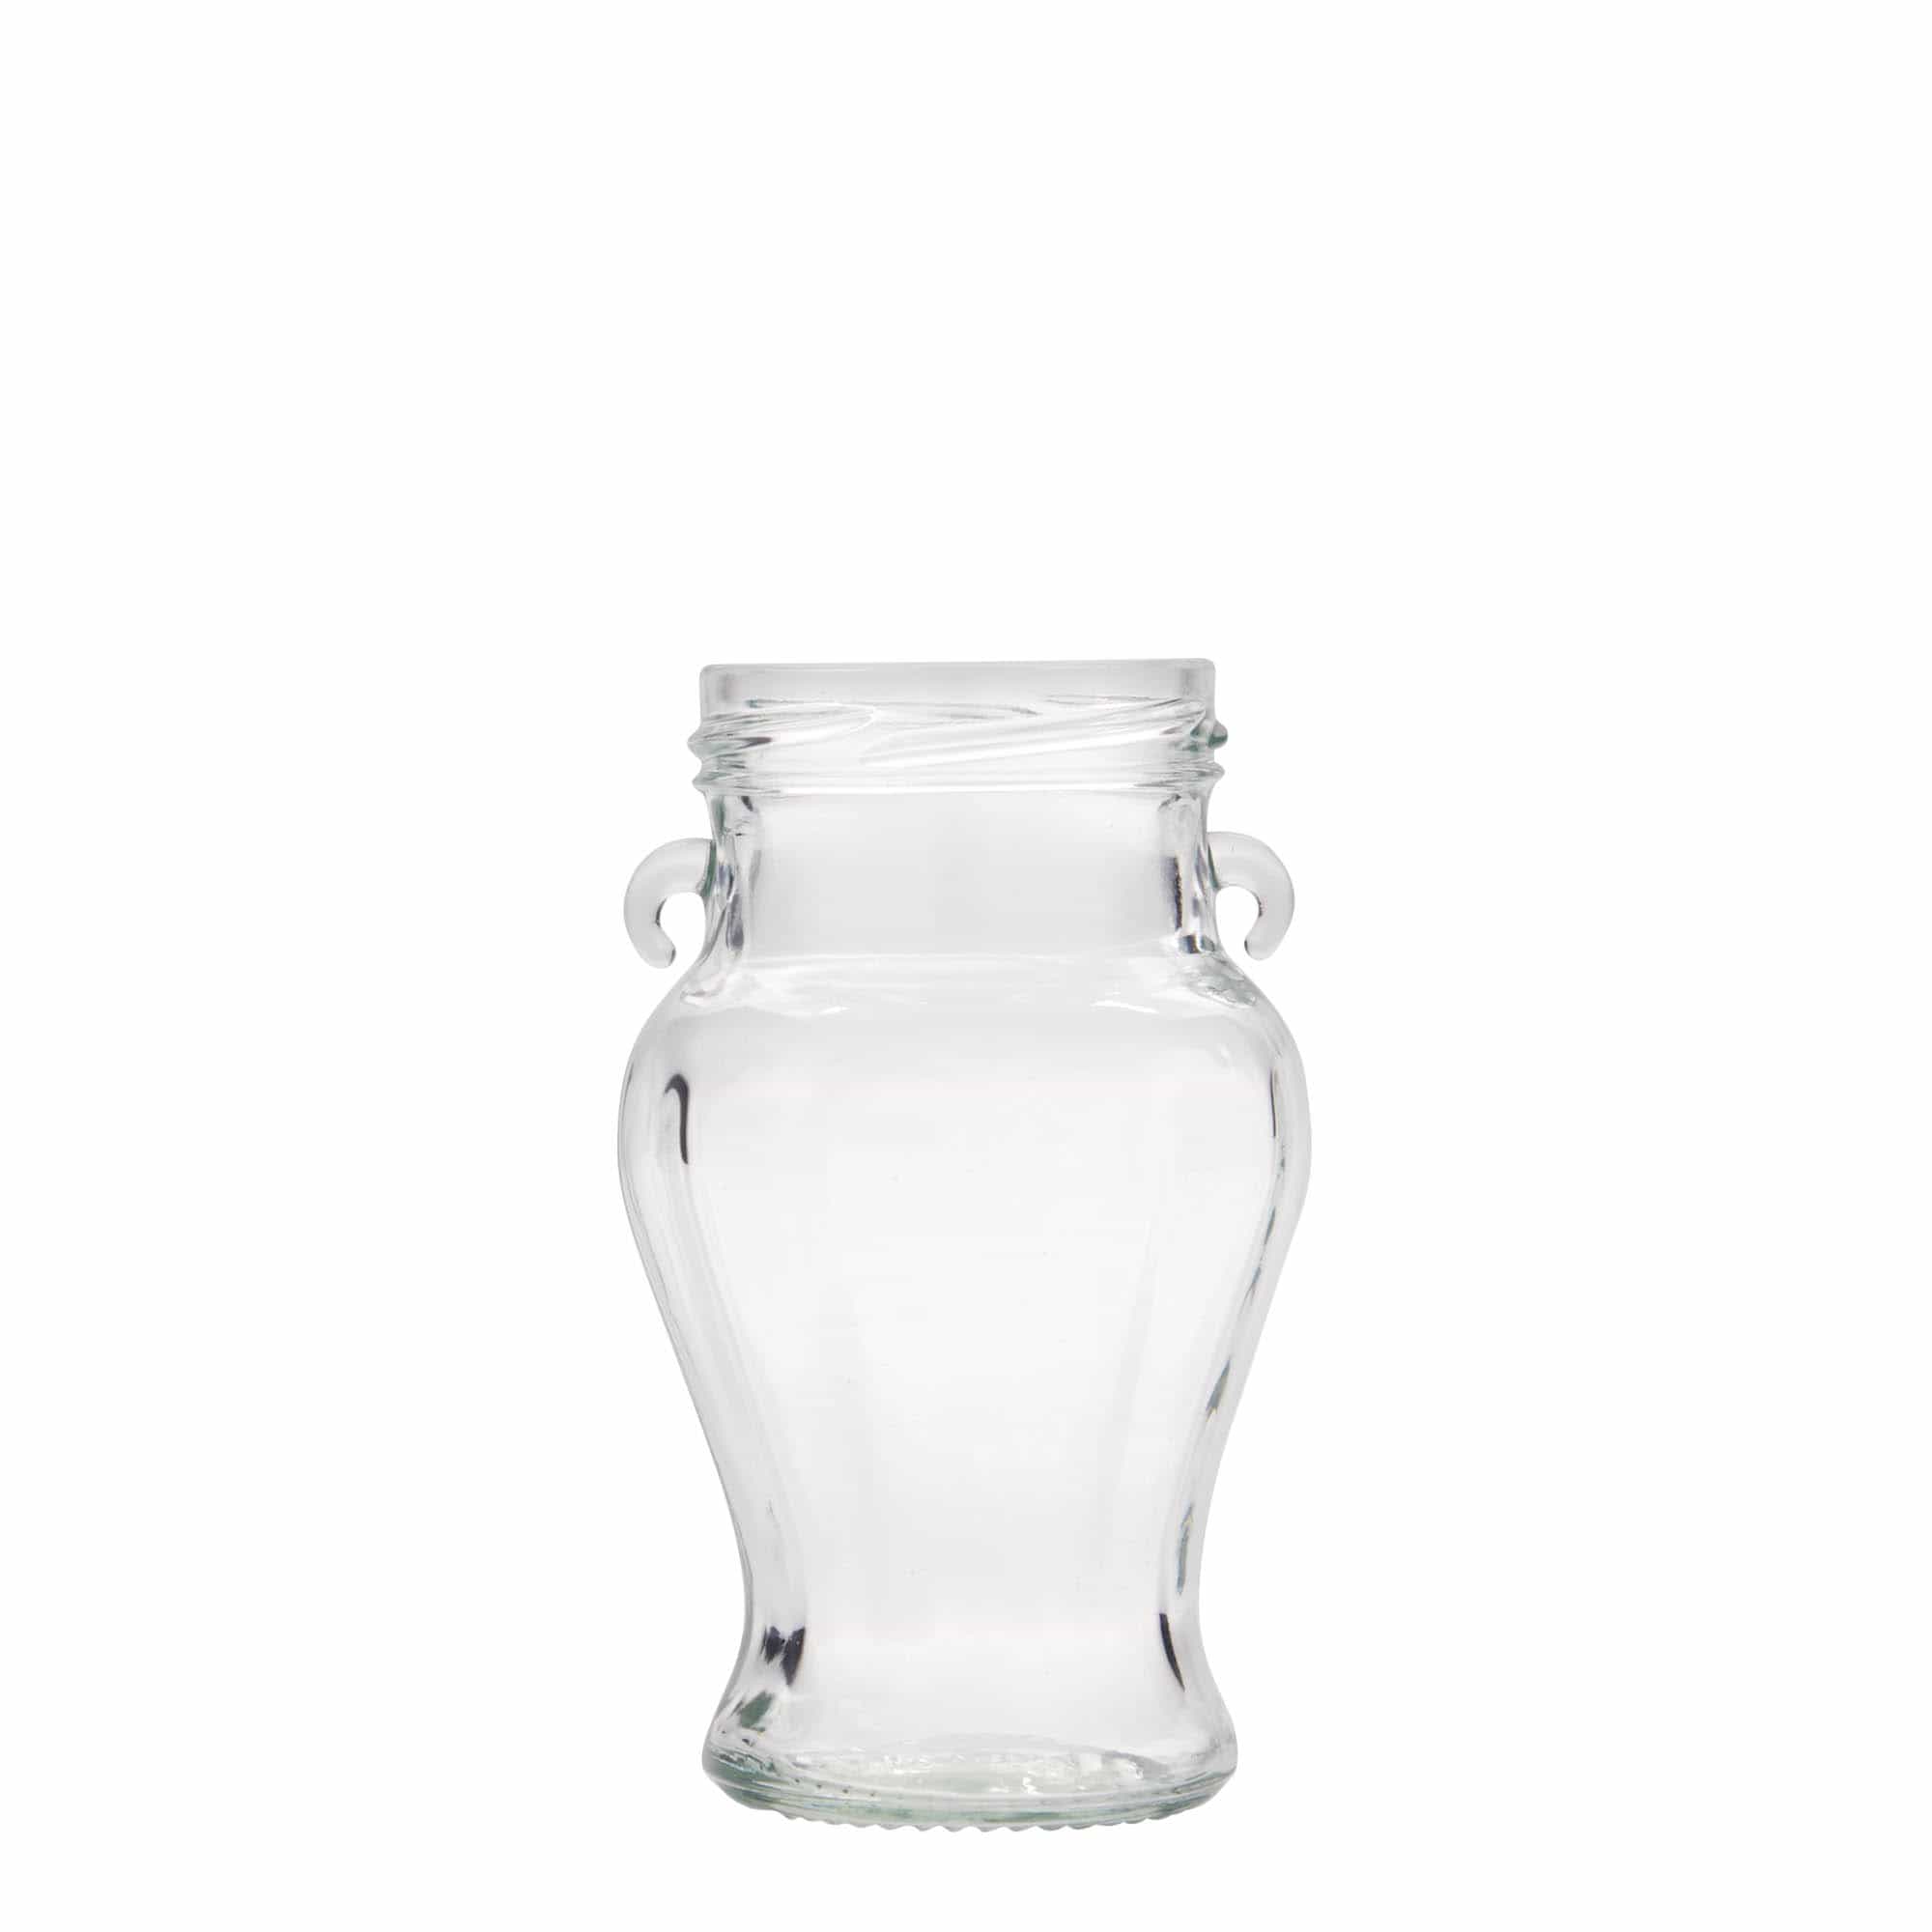 212 ml decorative jar 'Beauty', closure: twist off (TO 58)